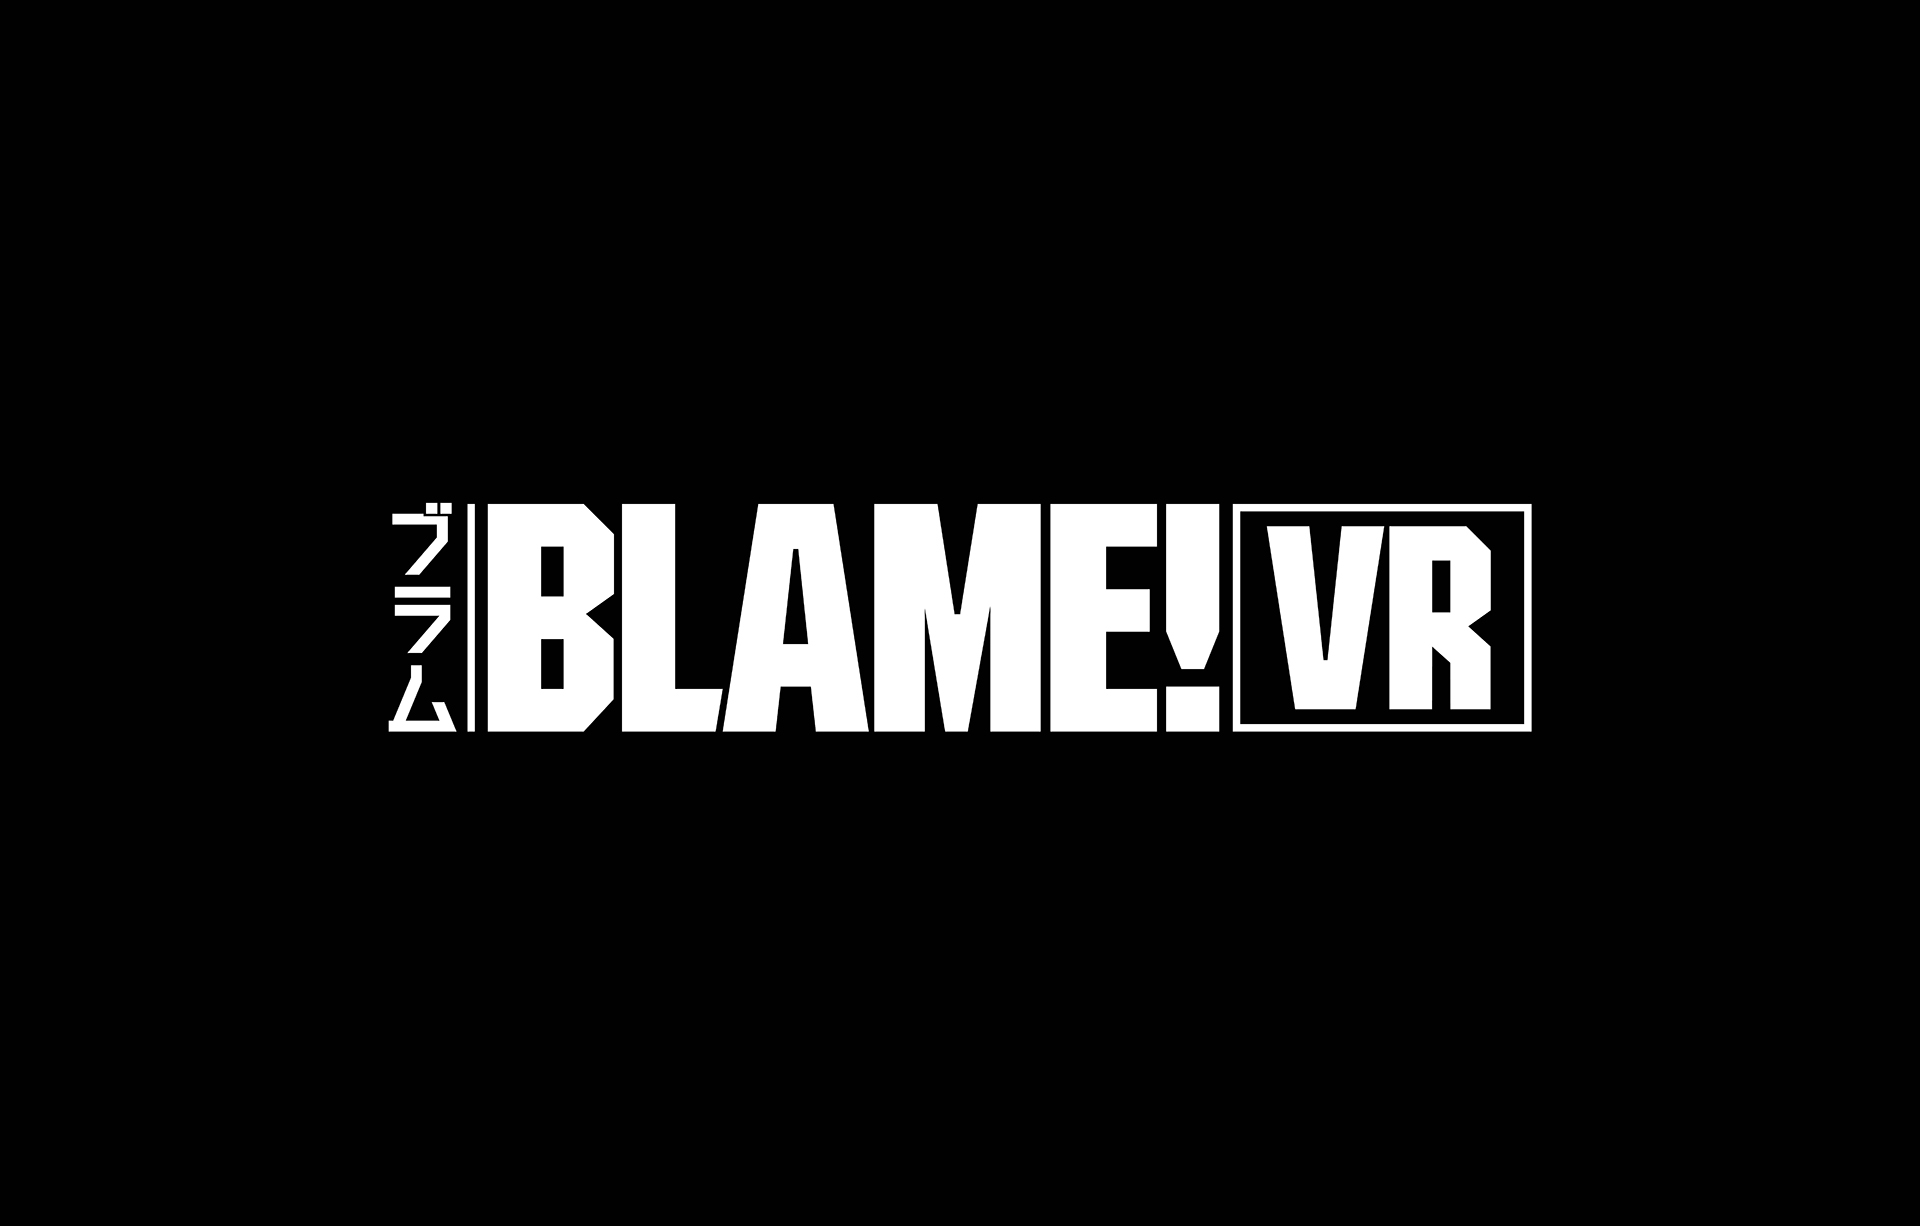 劇場アニメ Blame の世界観を再現したvrコンテンツ Blame Vr が登場 17年5月14日より期間限定で体験可能 株式会社カヤックのプレスリリース